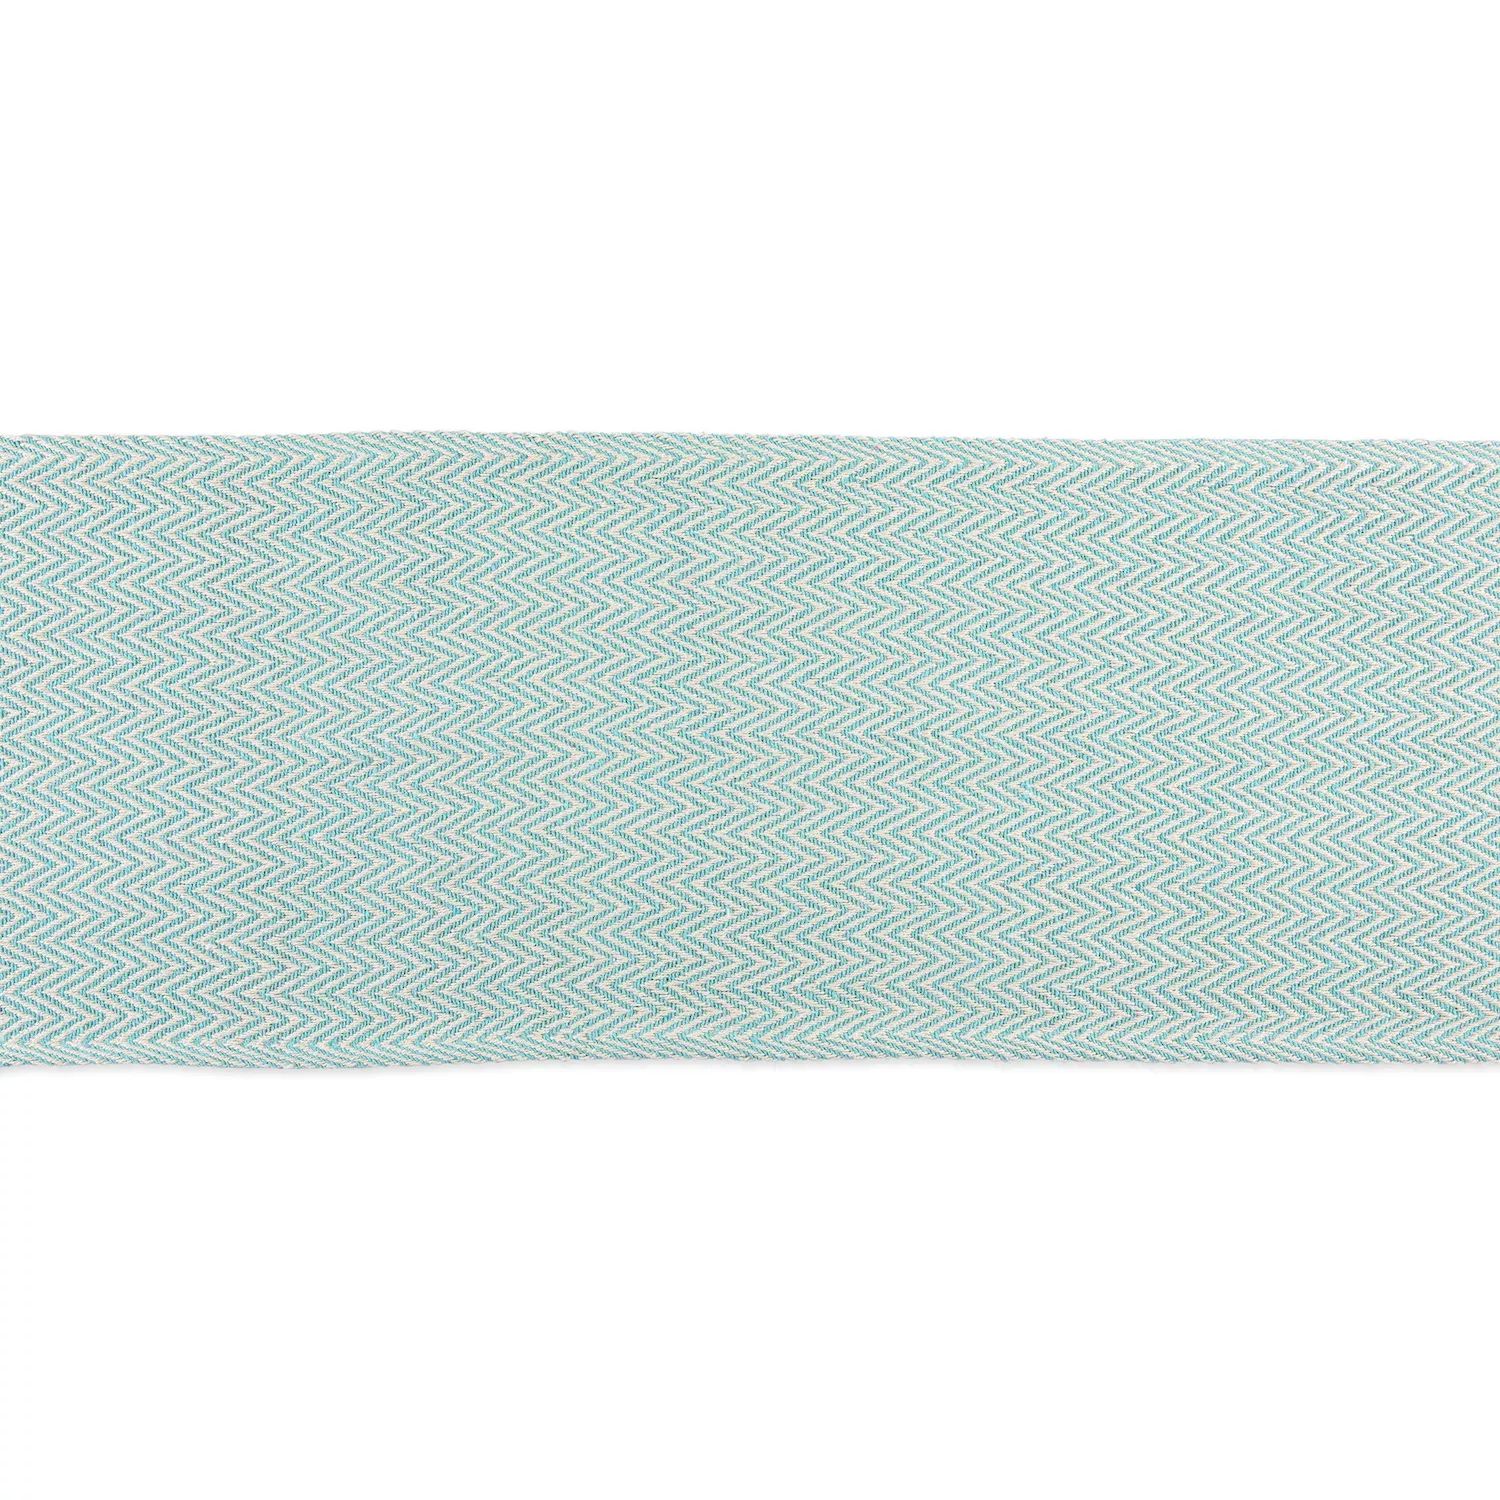 72-дюймовая прямоугольная скатерть с шевронным плетением цвета морской волны и белого цвета 104 дюймовая прямоугольная скатерть в клетку кремово белого и коричневого цвета с металлическим оттенком